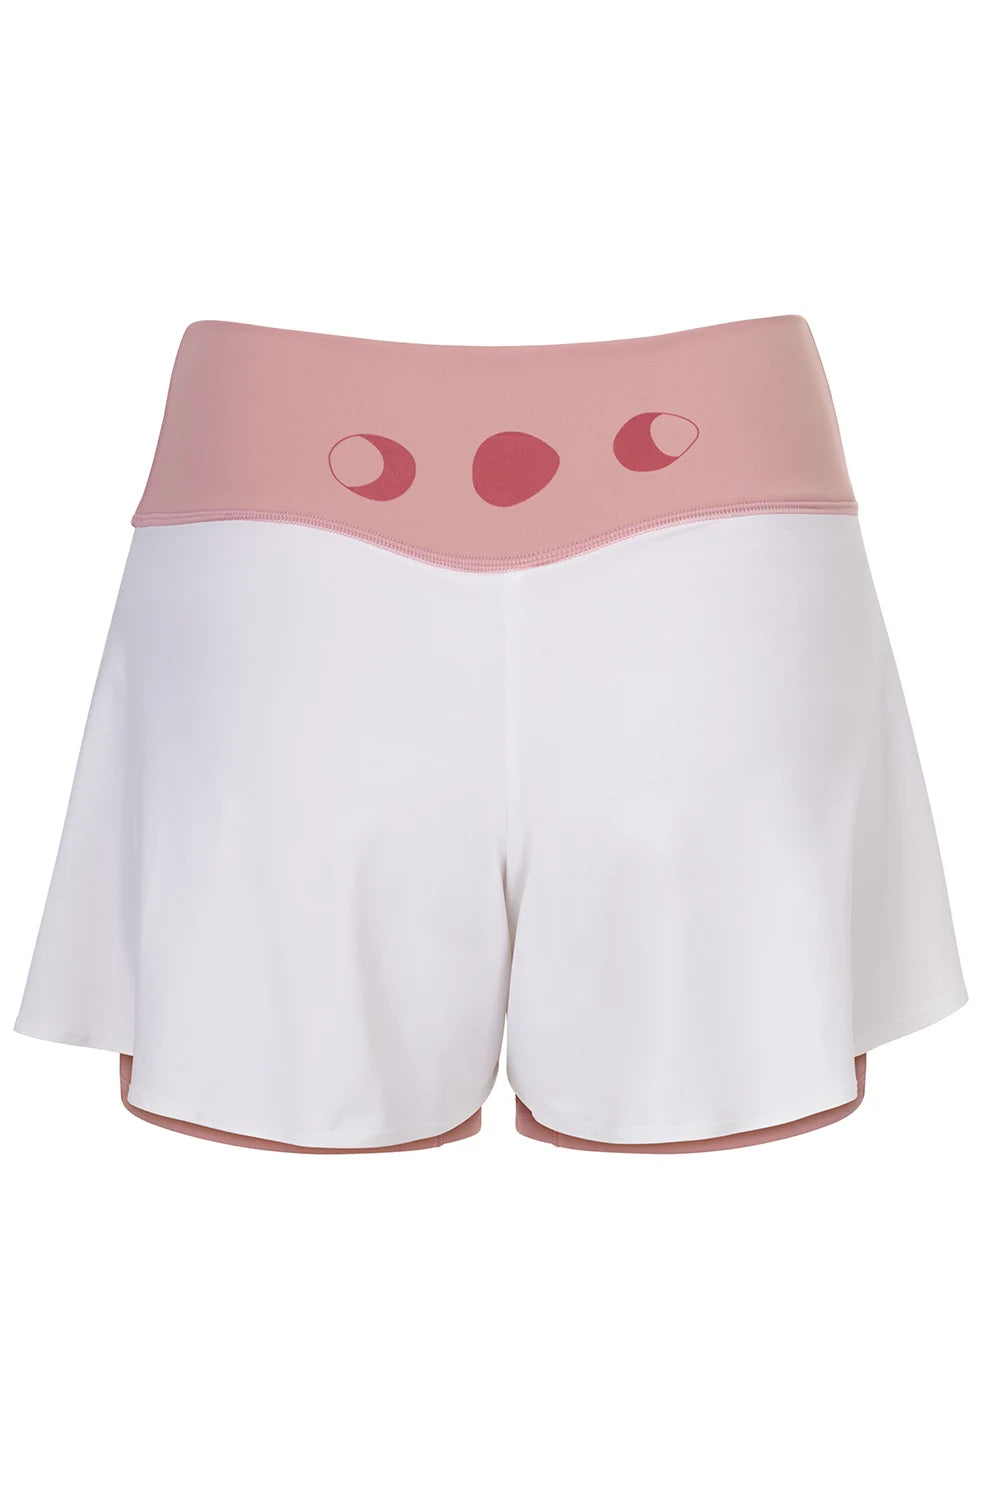 Silueta de Shorts de yoga de Yogimi en color rosa con capa blanca. Modelo Prana Mellow Rose-White